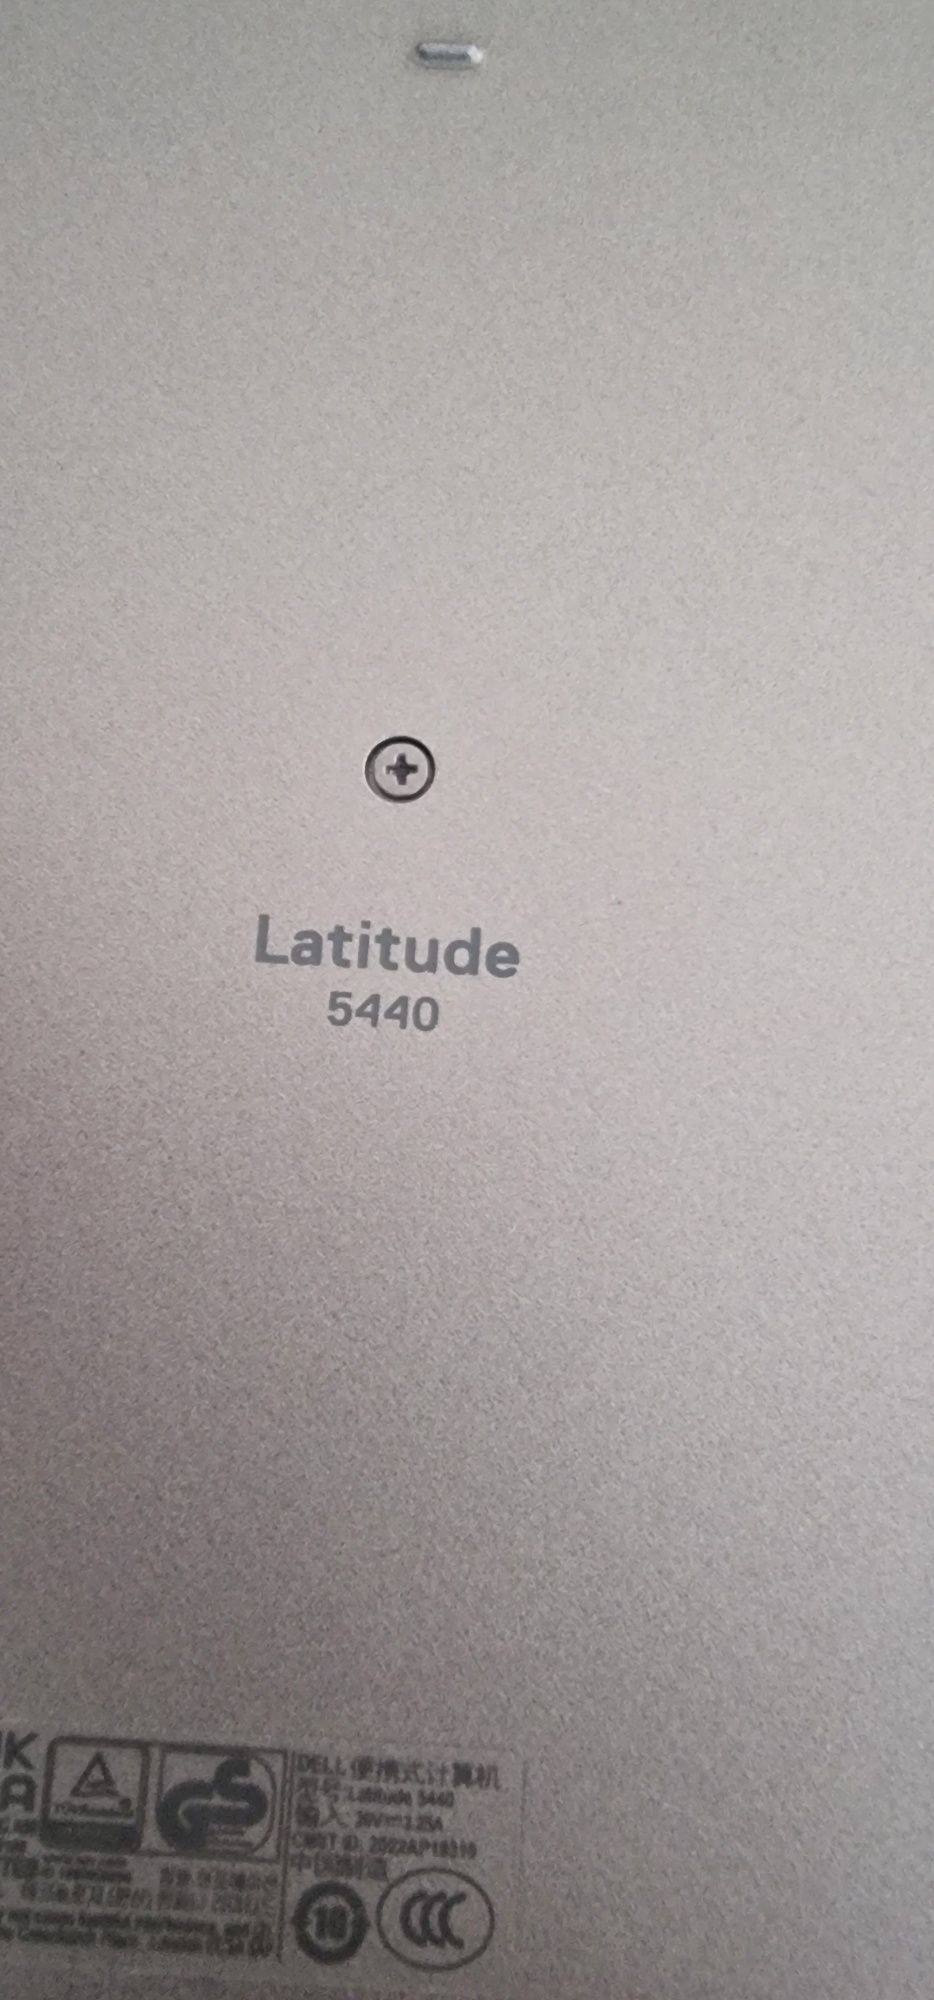 dell latitude e5440 p165g001